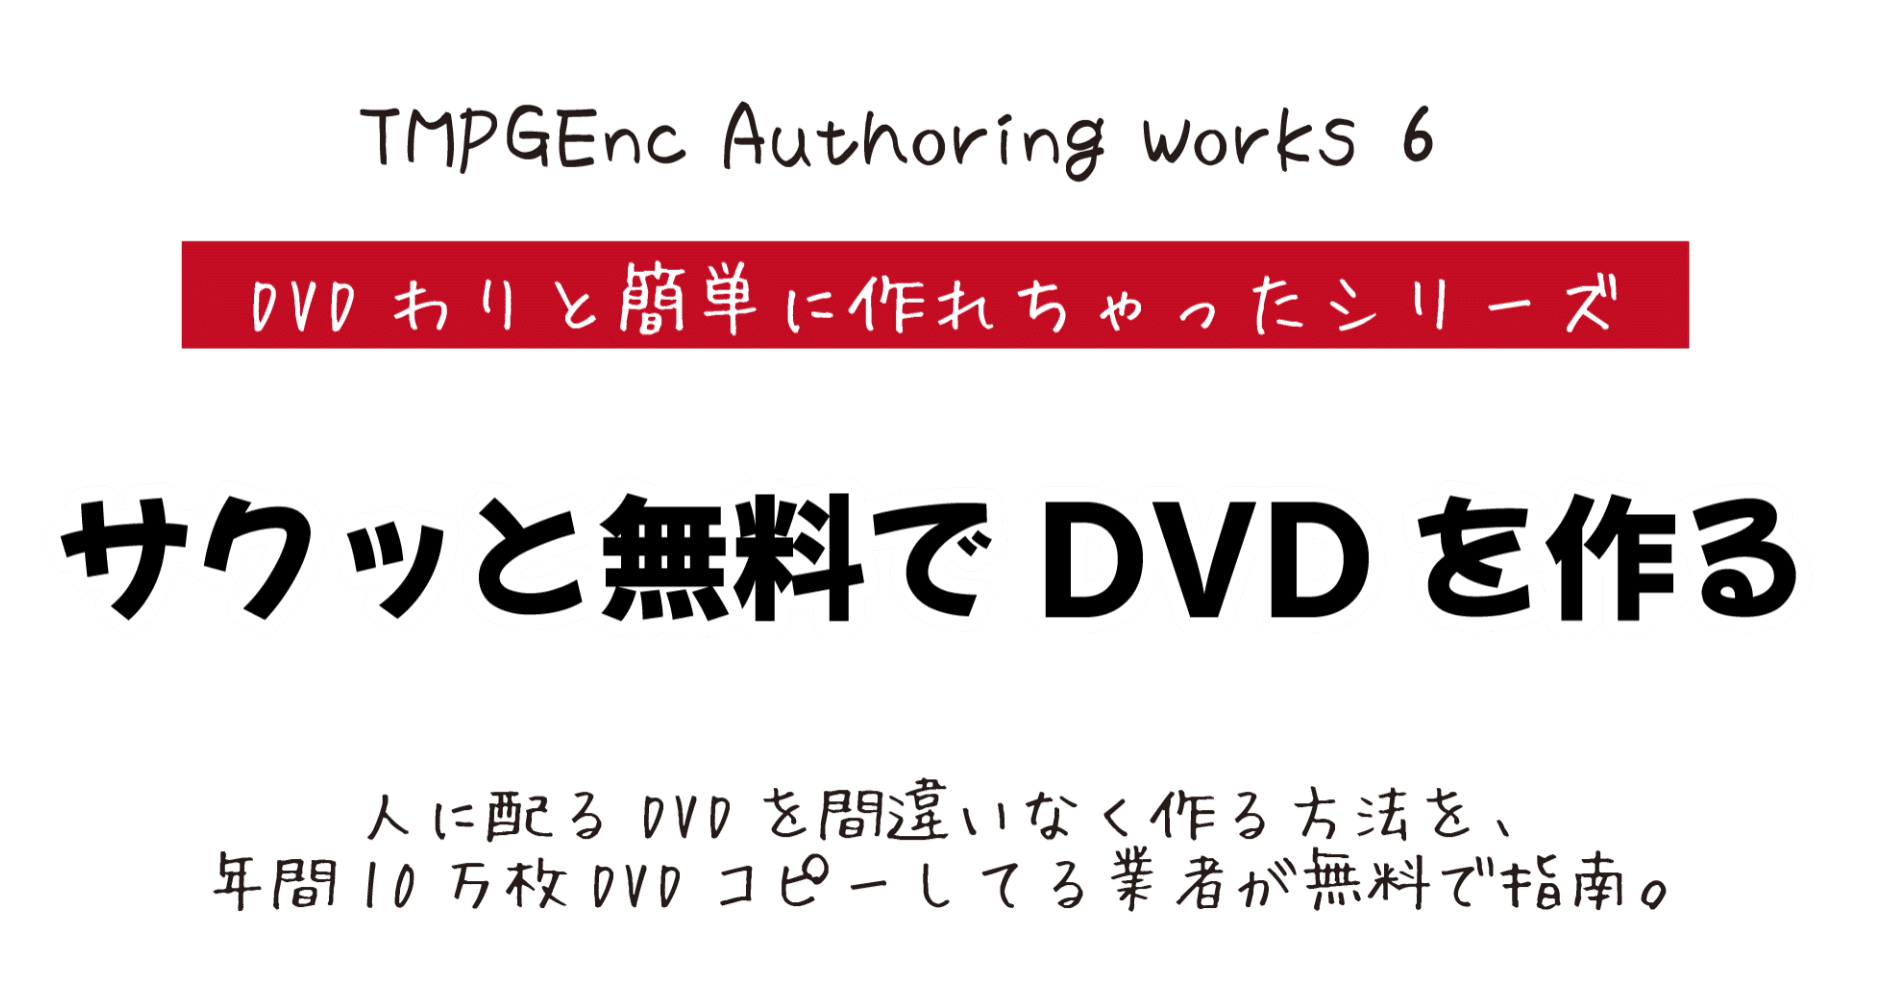 さくっと 無料 でdvdの作り方 Dvd即日コピー専門店 アイブライト マニュアル館 Note